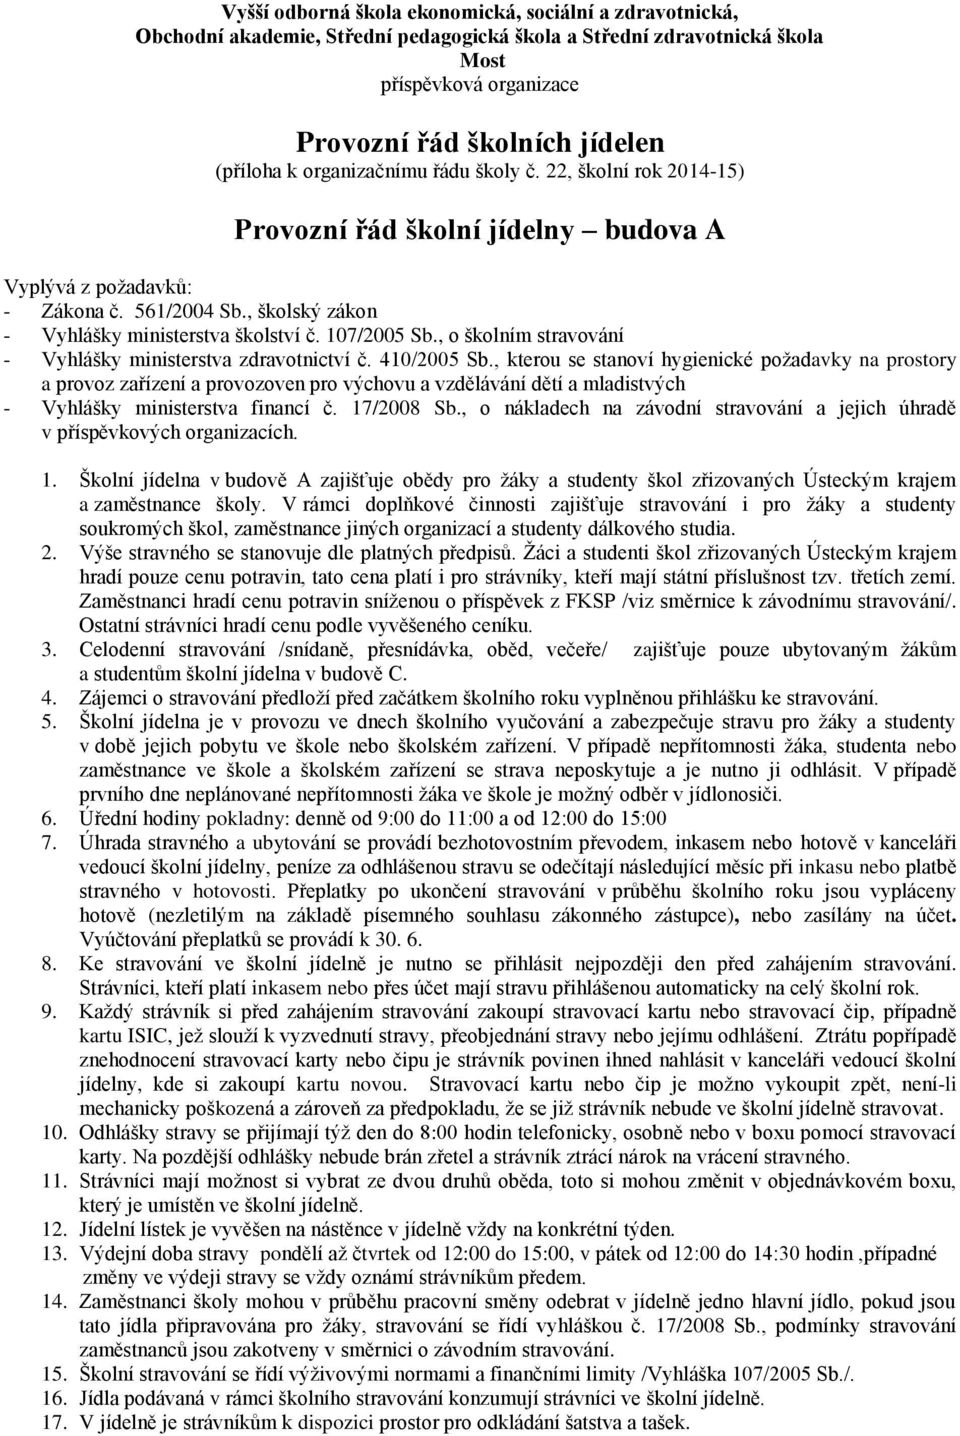 , o školním stravování - Vyhlášky ministerstva zdravotnictví č. 410/2005 Sb.